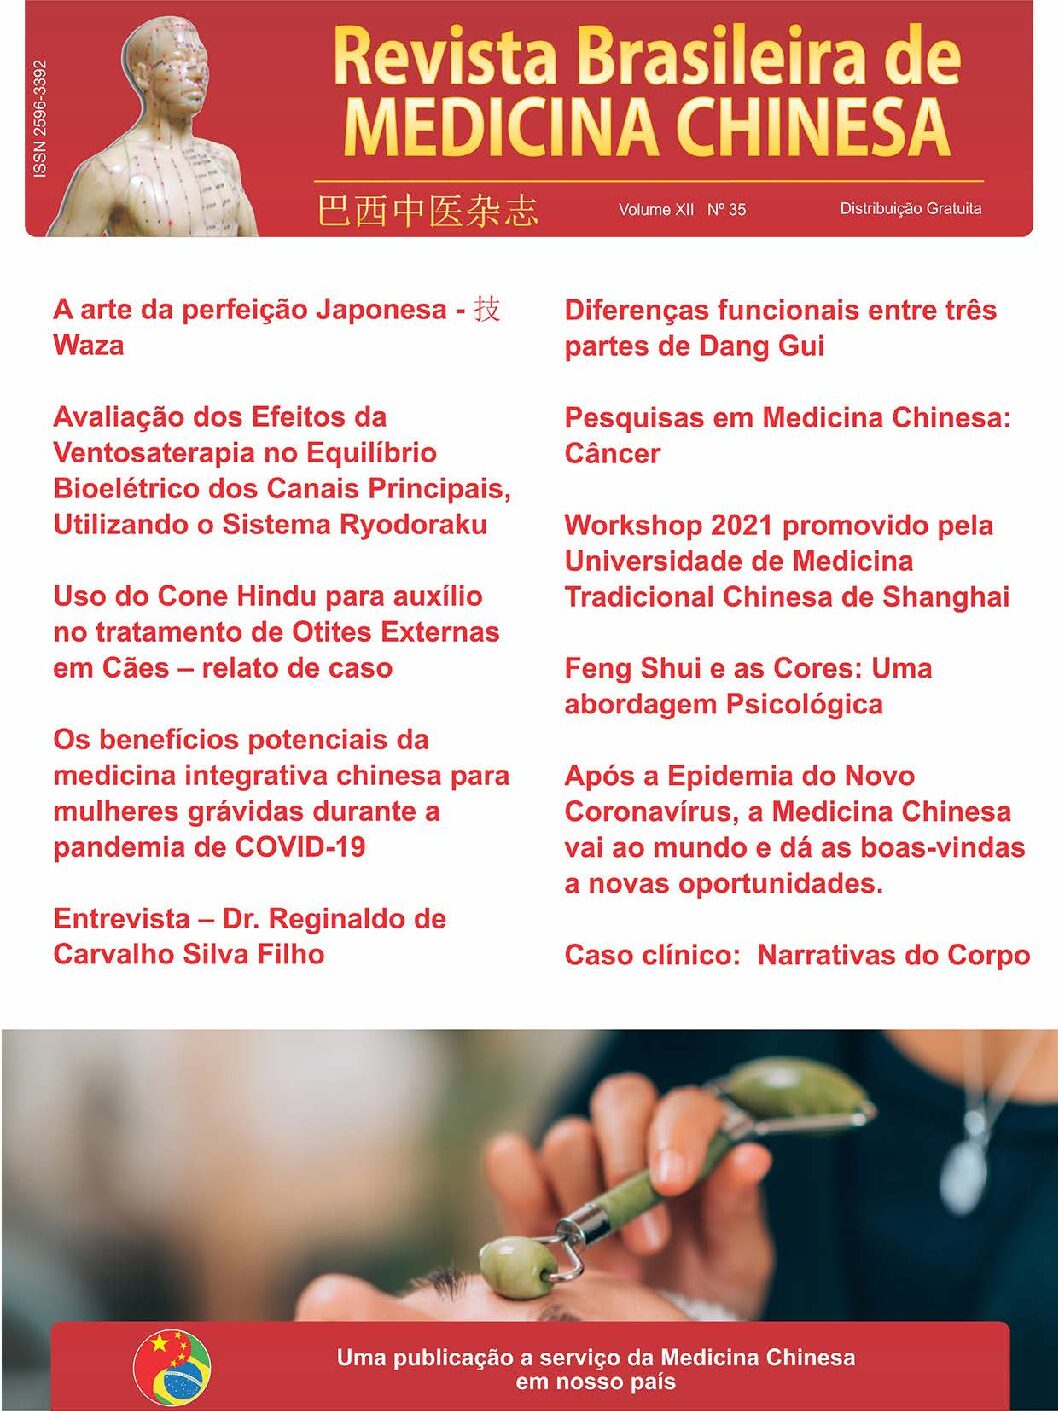 Revista Brasileira de Medicina Chinesa – 35ª Edição